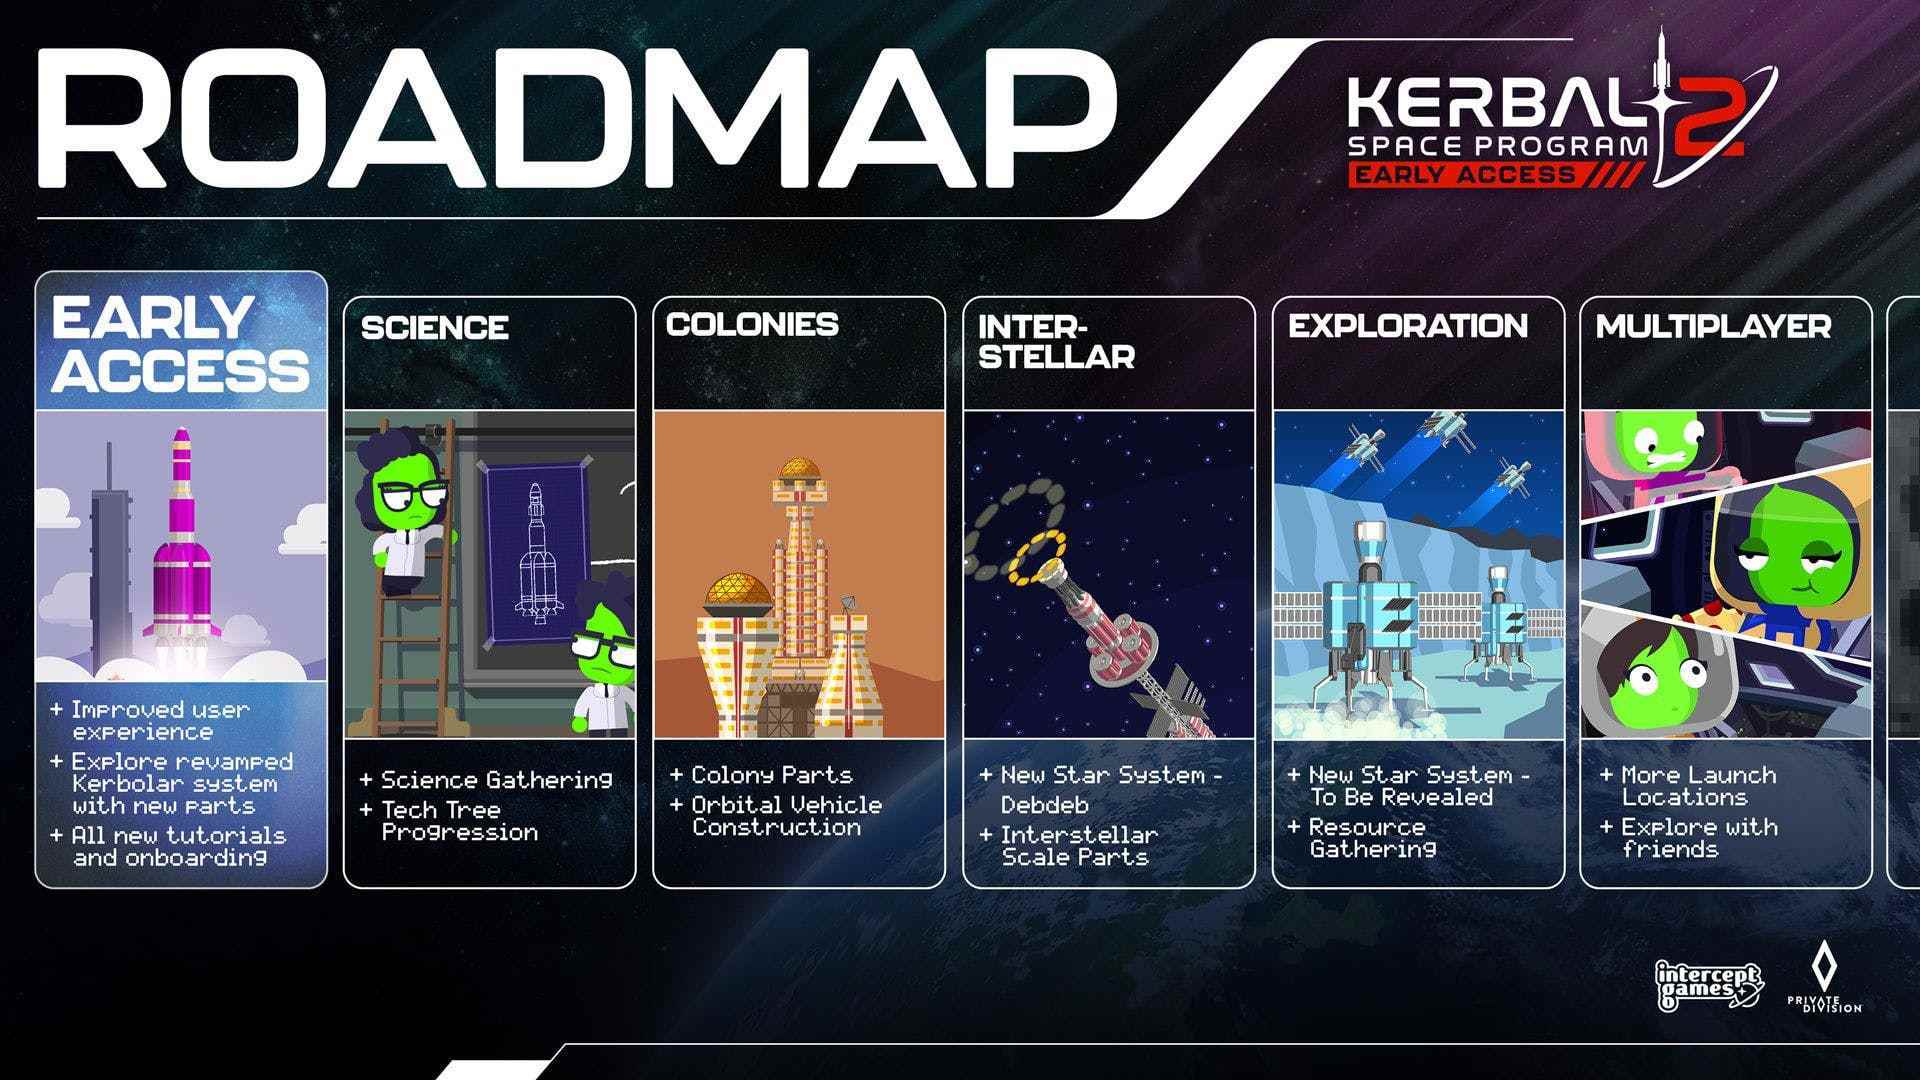 Kerbal Space Program 2 için Erken Erişim yol haritasının bir zaman çizelgesi, yıldızlararası seyahat ve çok oyunculu seçenekler gibi özellikleri detaylandırıyor